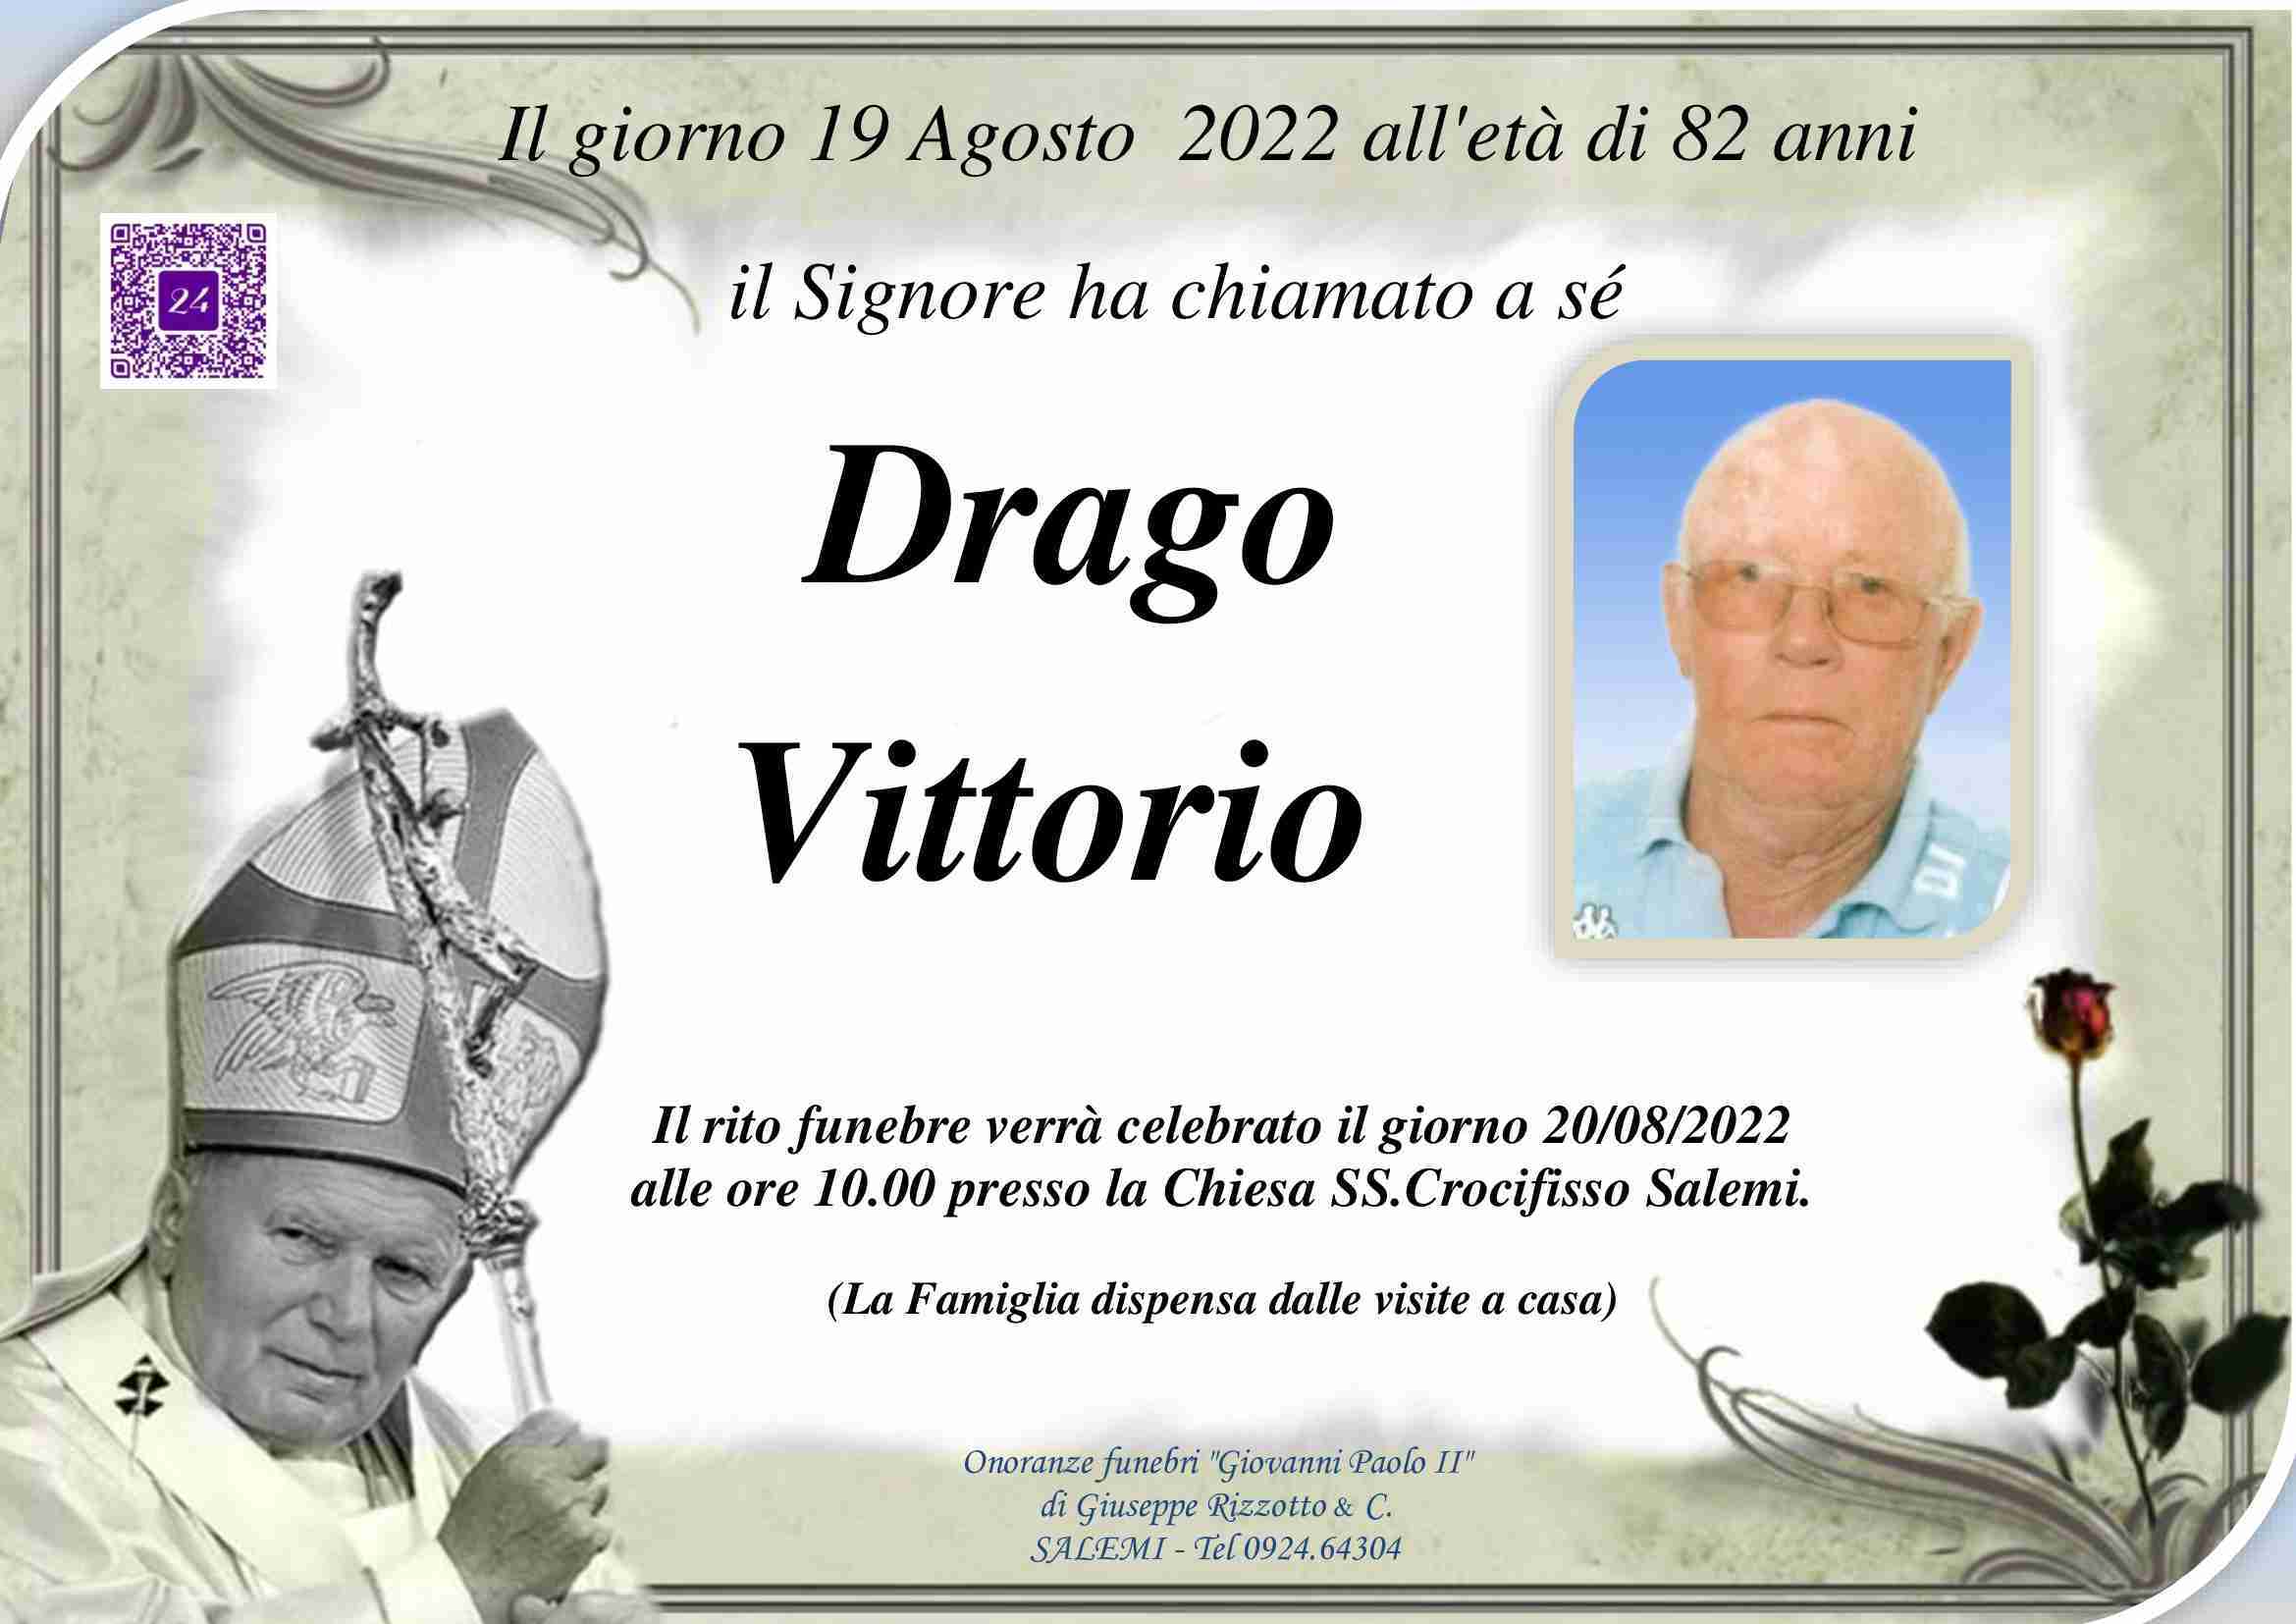 Vittorio Drago